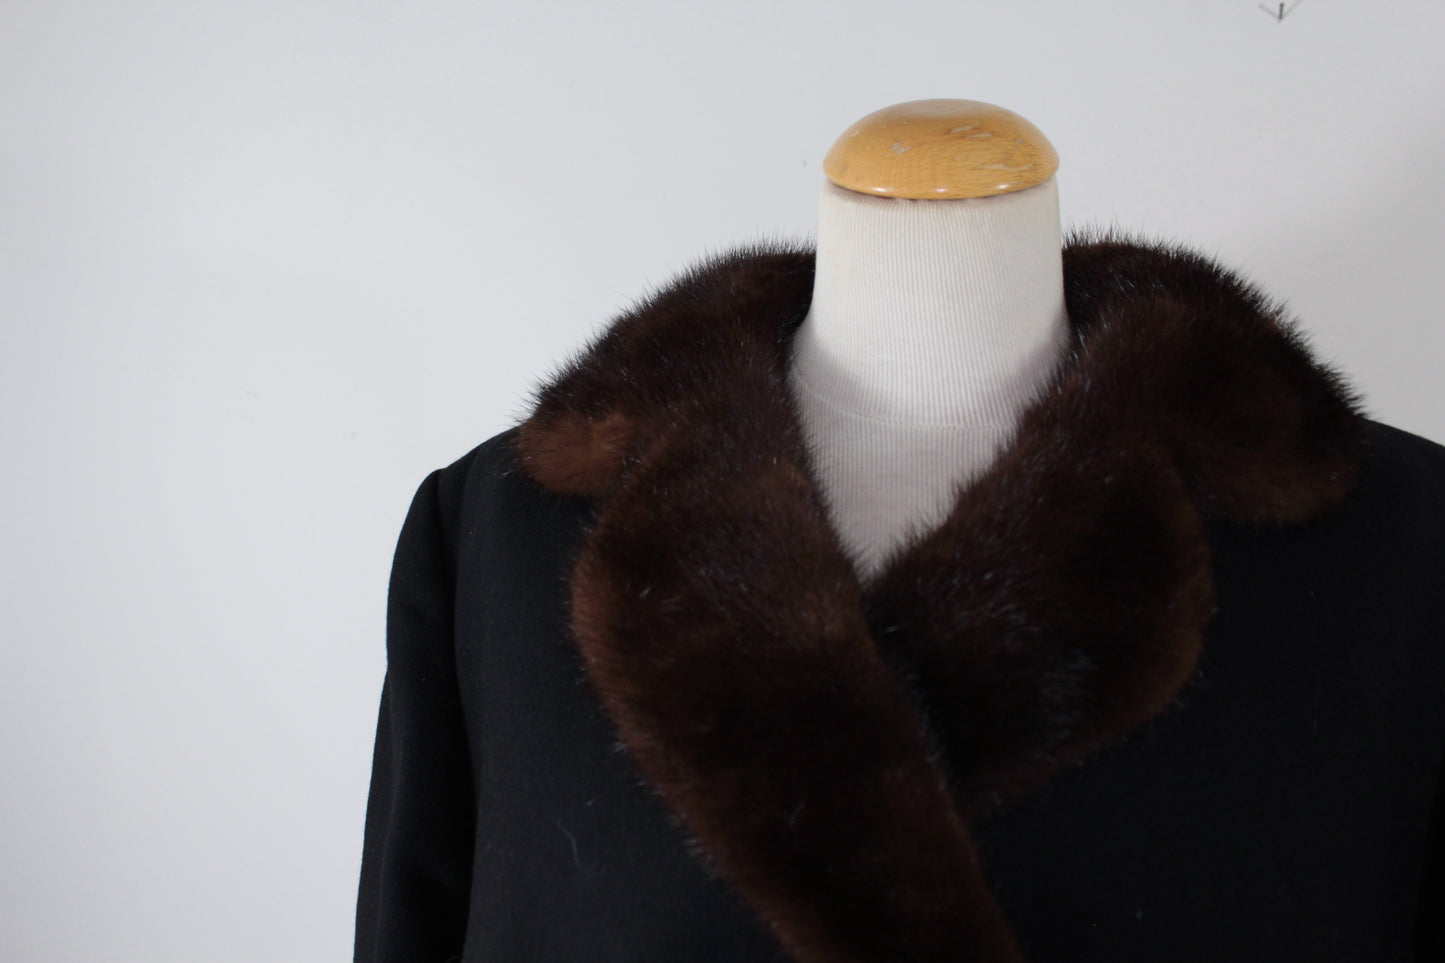 Manteau long noir en laine col fourrure marron Dell mod La friperie vintage